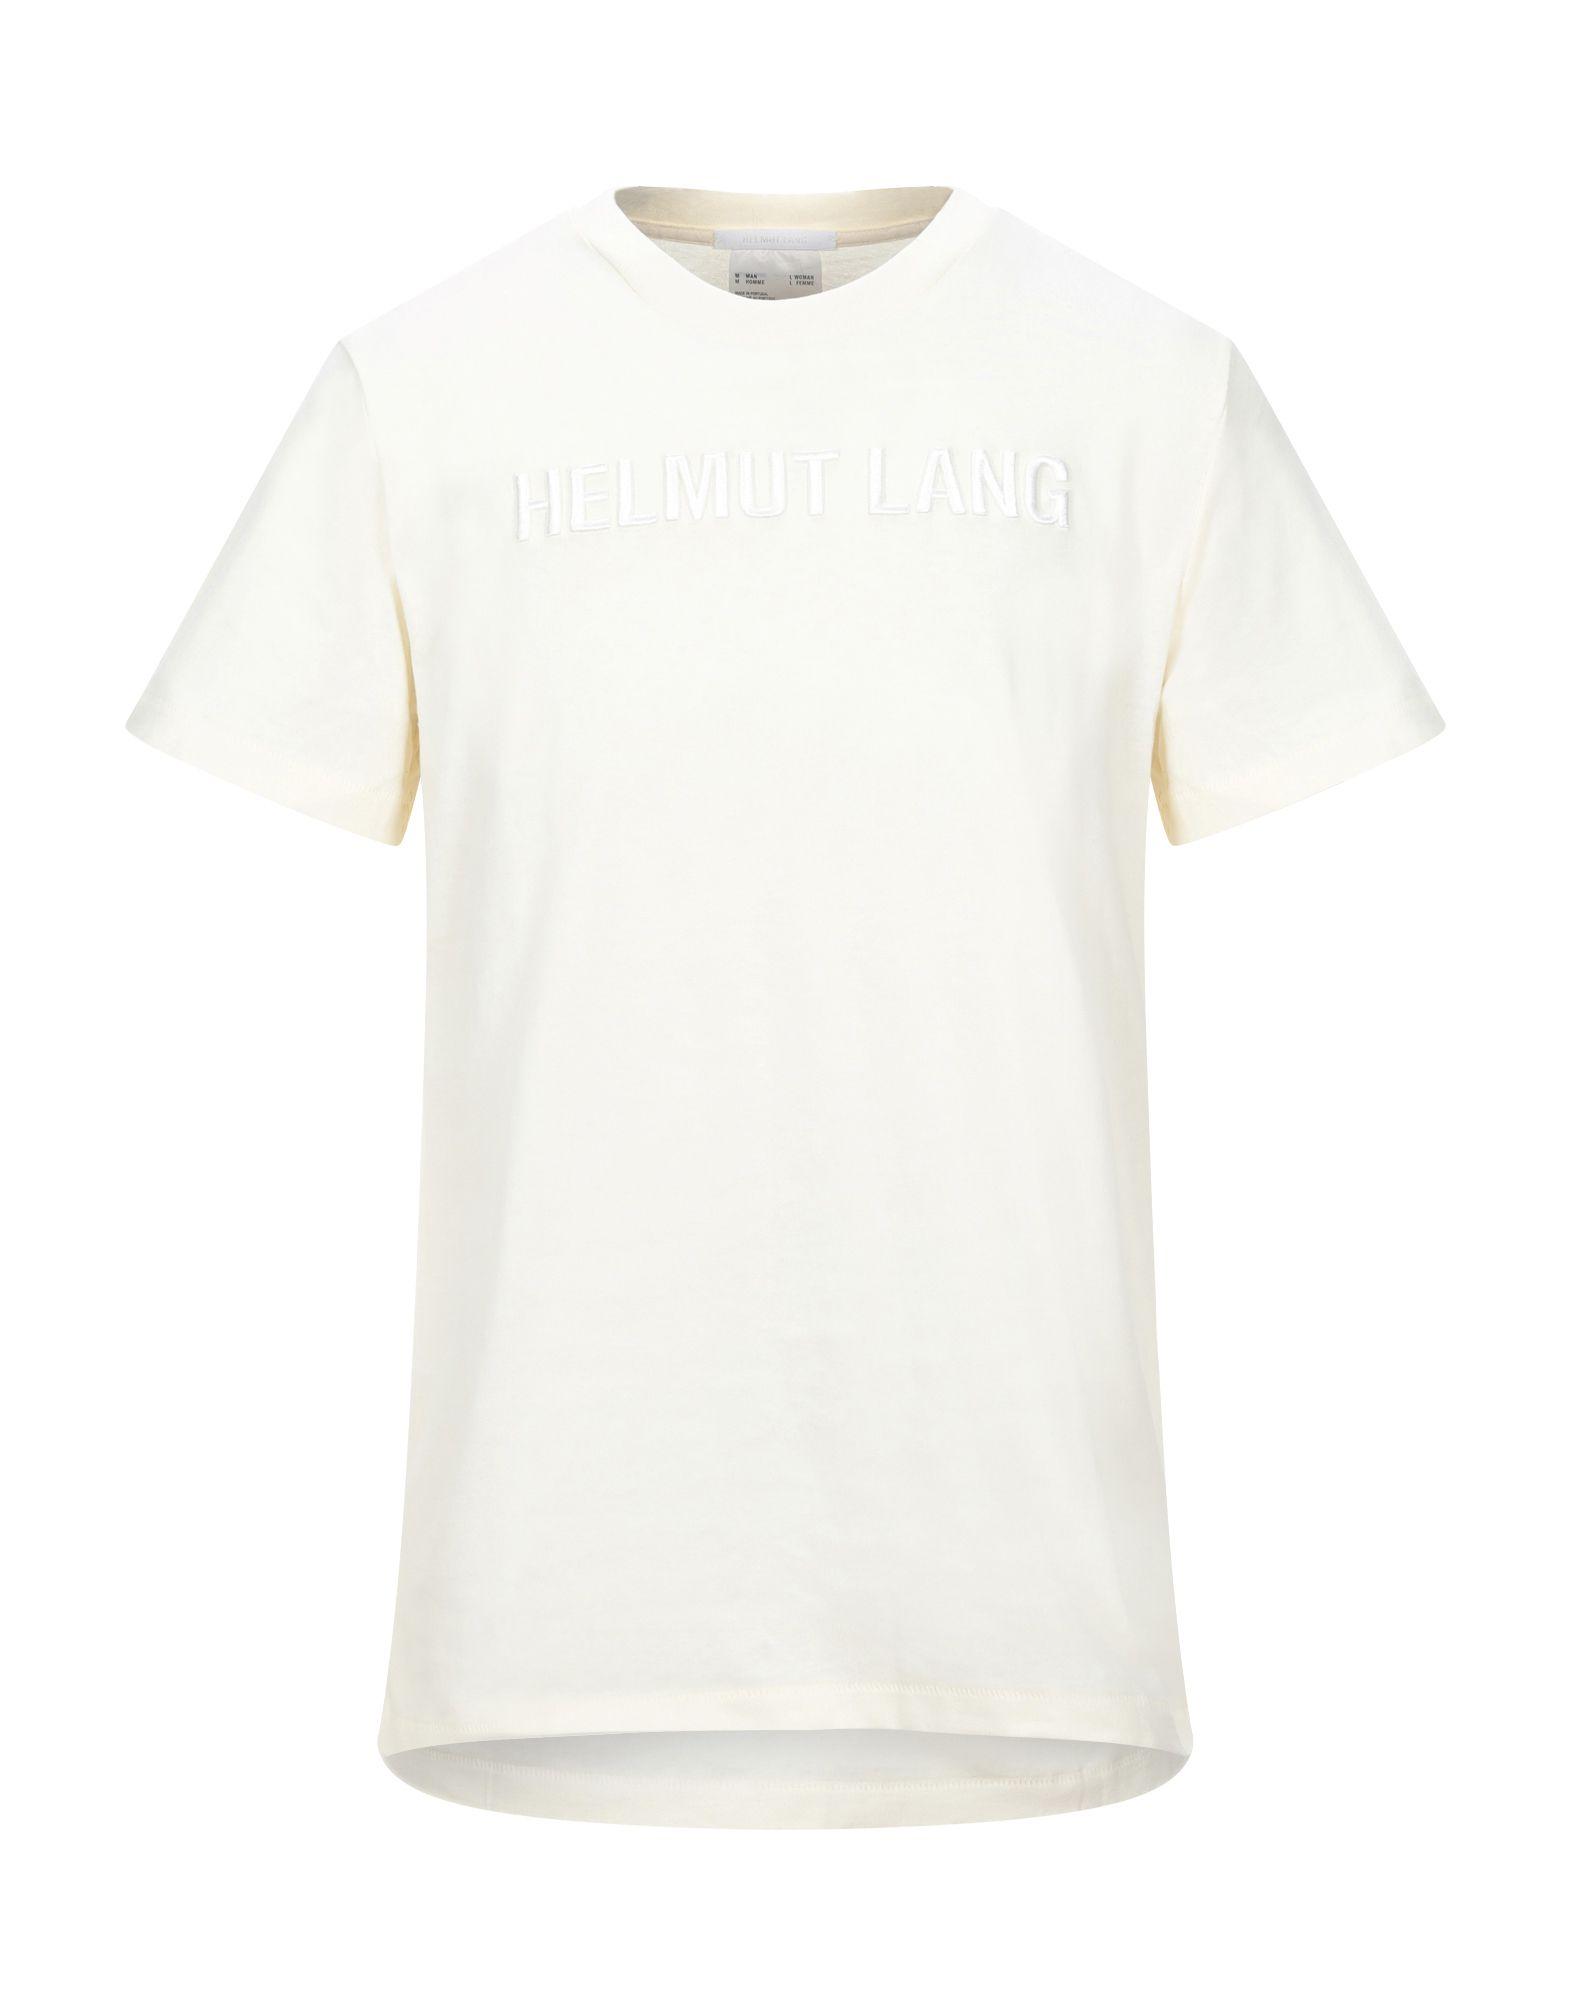 Helmut Lang T-shirt in Ivory (White) for Men - Lyst